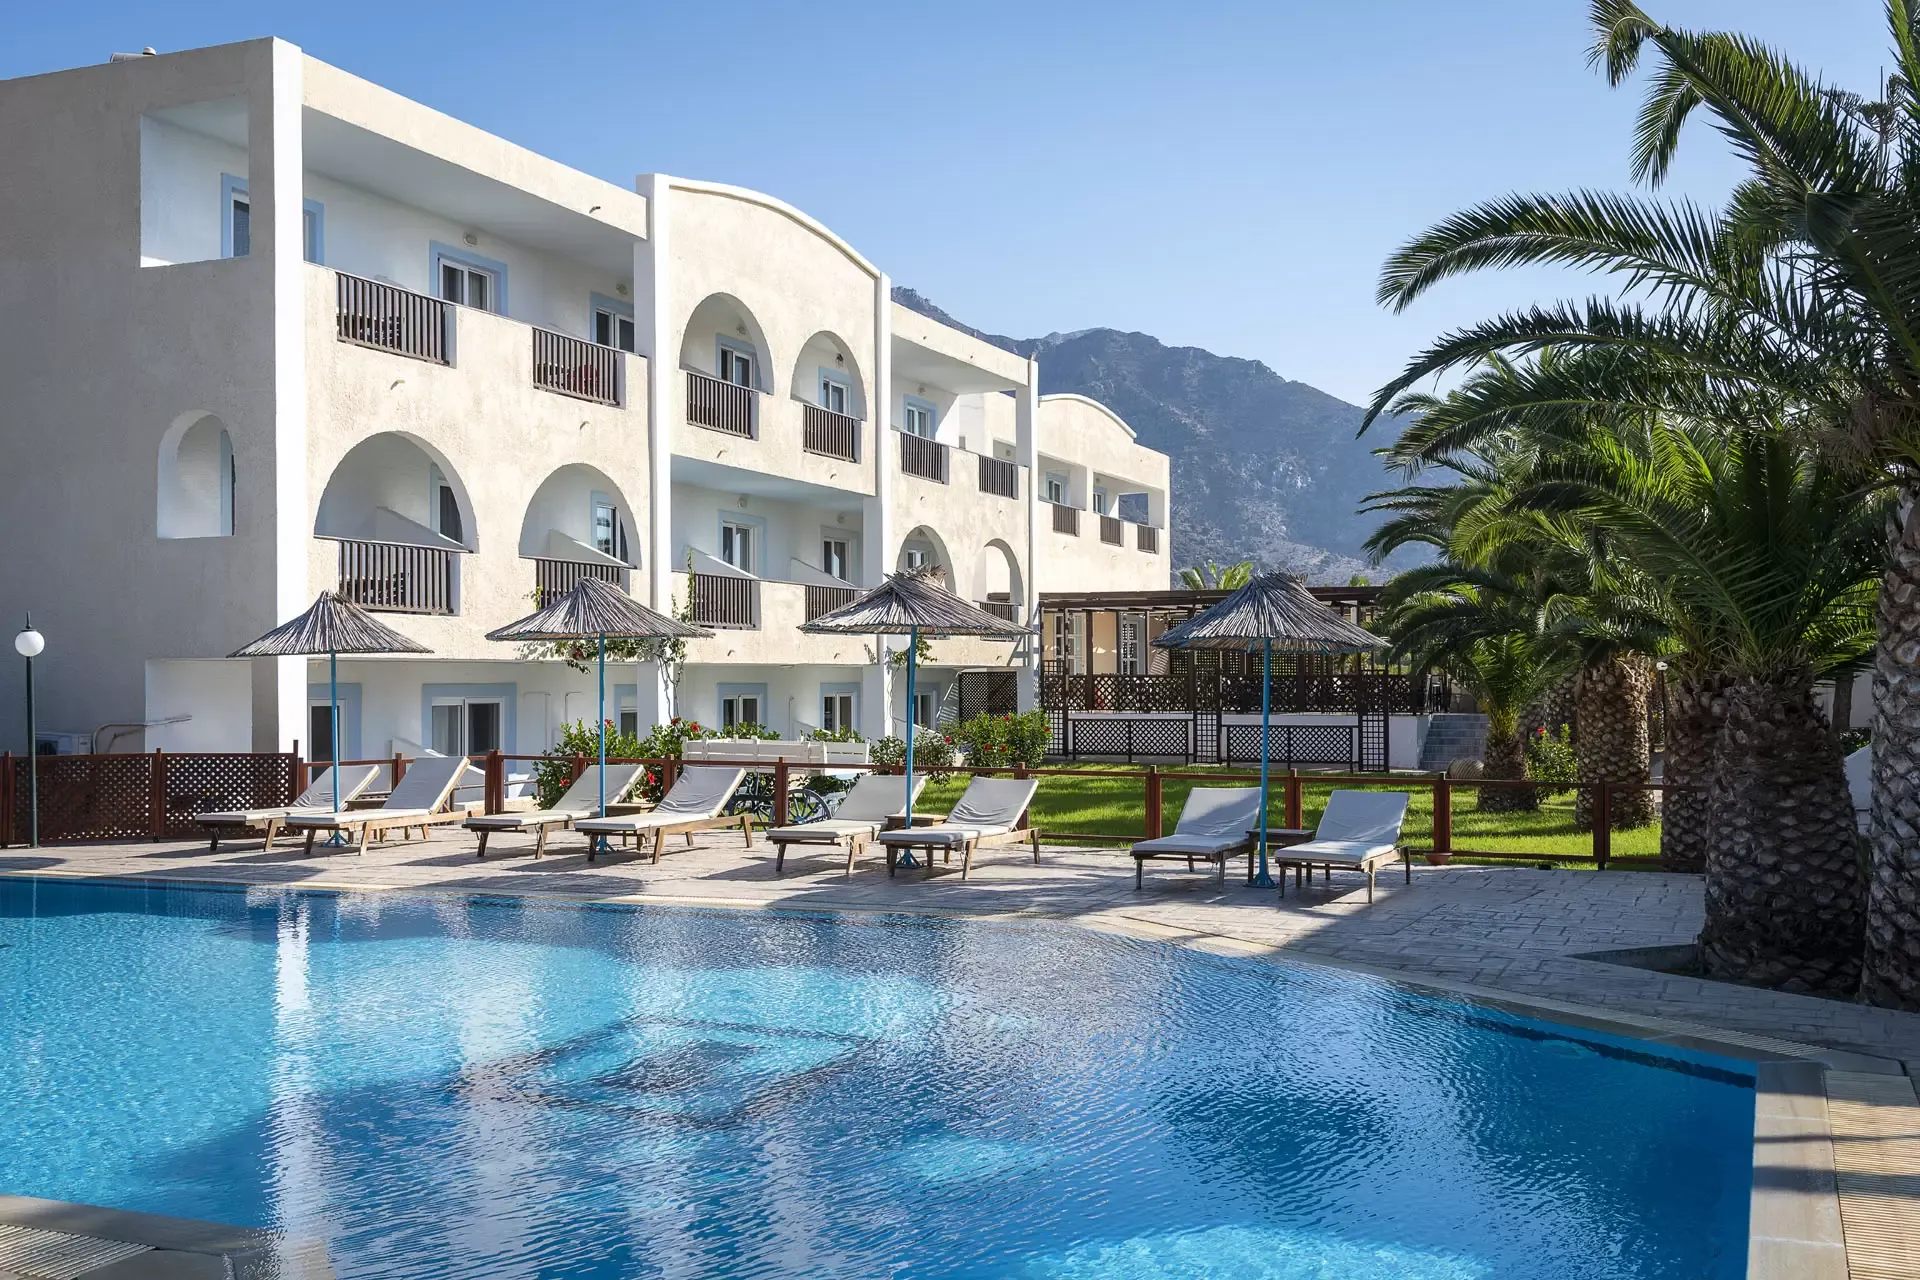 Ζητείται υπάλληλος υποδοχής από το ξενοδοχείο Kalimera Mare στην Καρδάμαινα